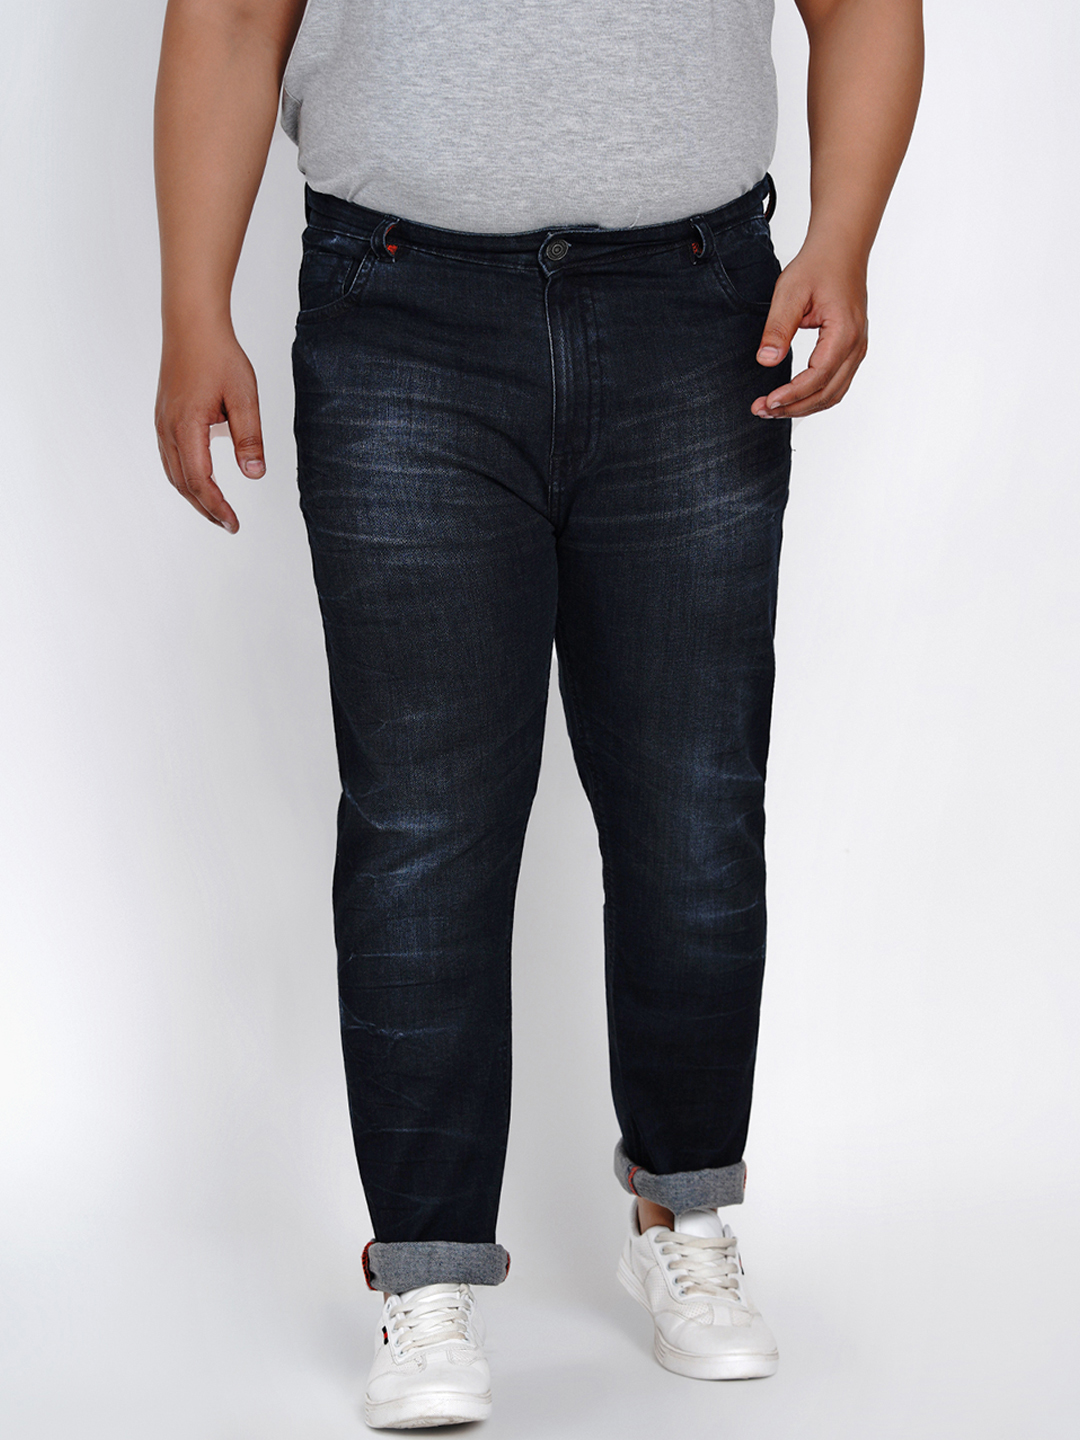 bottomwear/jeans/JPJ1282/jpj1282-1.jpg